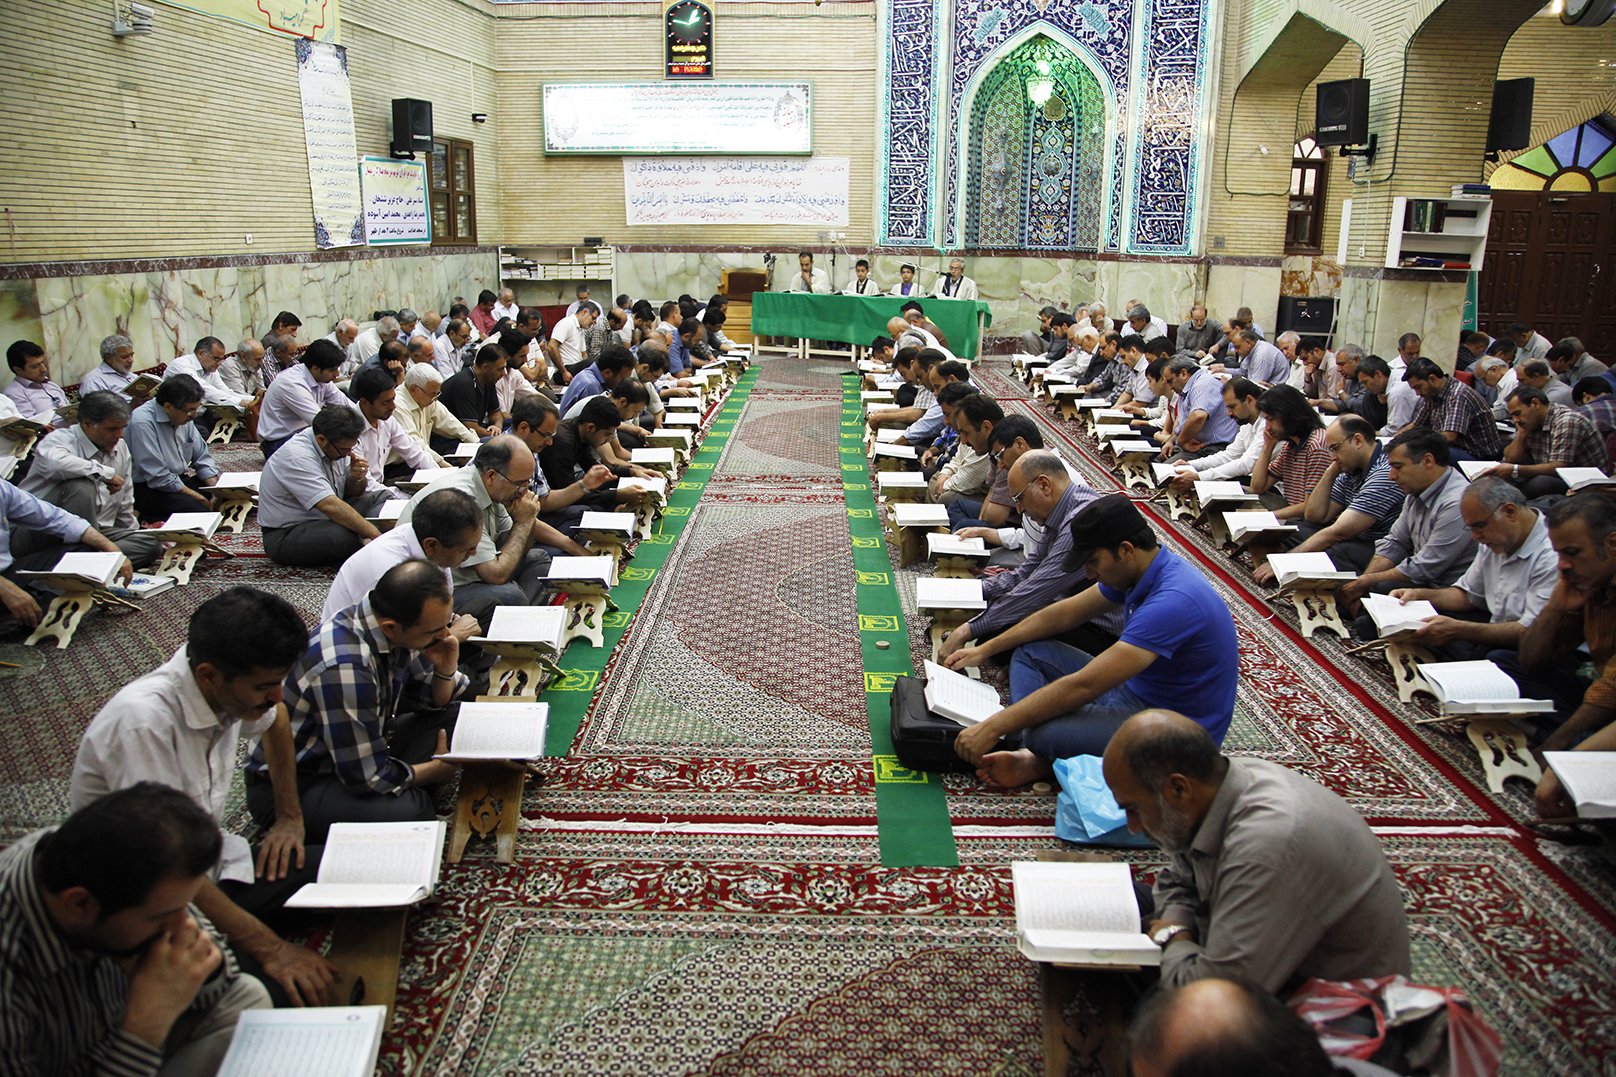 مساجد در ماه مبارک رمضان باید کانون پرورش جوانان انقلابی و مسجدی باشند